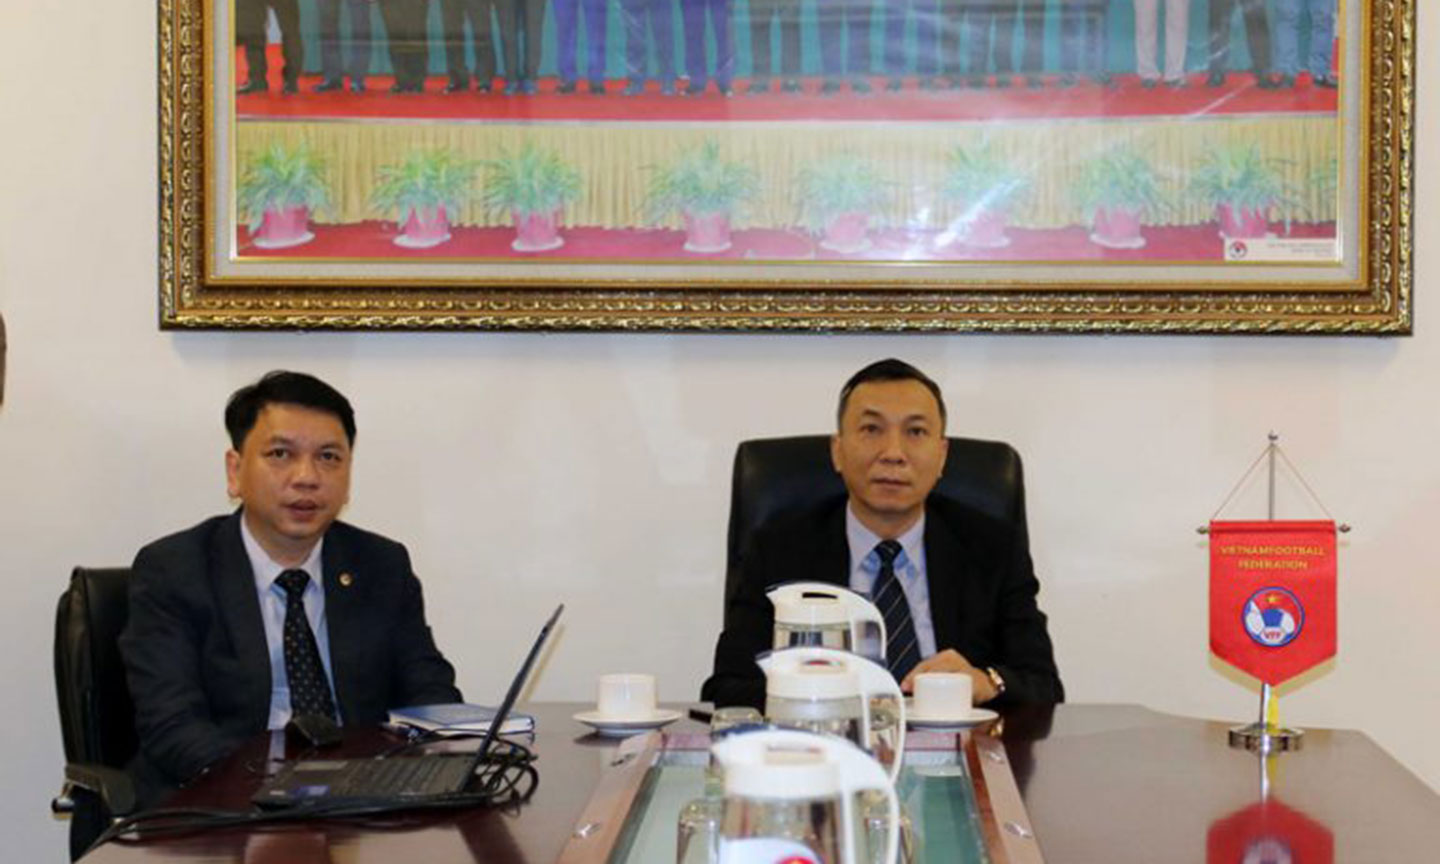 Phó chủ tịch thường trực LĐBĐVN Trần Quốc Tuấn (bên phải) và Tổng thư ký LĐBĐVN Lê Hoài Anh (bên trái) tham dự Đại hội thường niên AFF lần thứ 27, tổ chức trực tuyến do ảnh hưởng của dịch COVID-19.